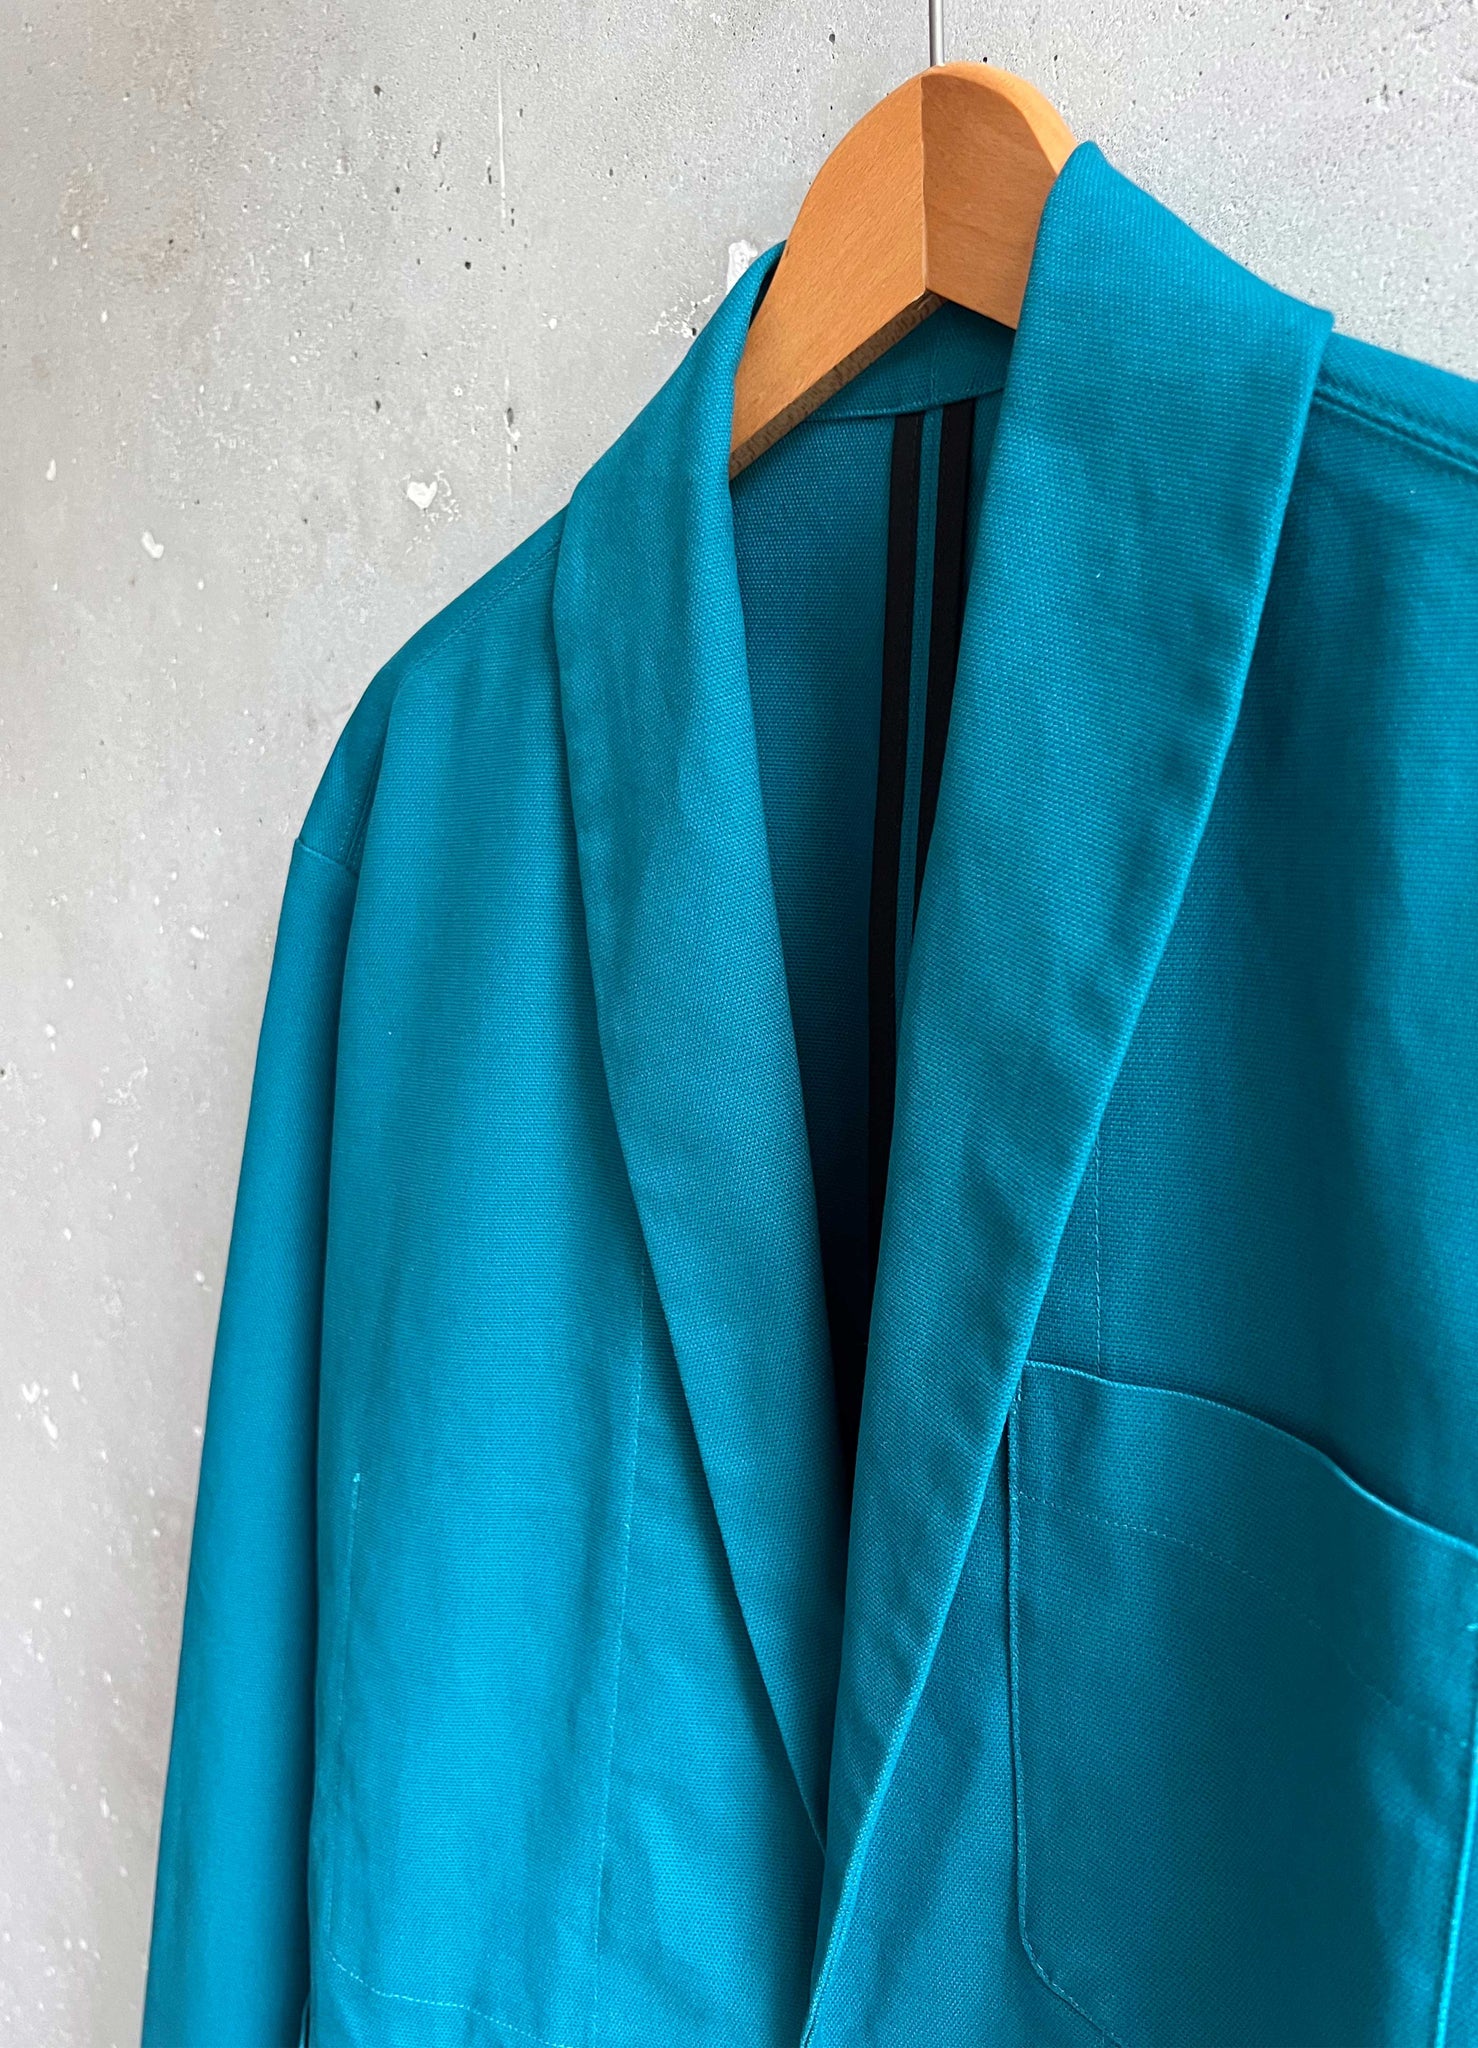 Soft Suit jacket rich turquoise canvas